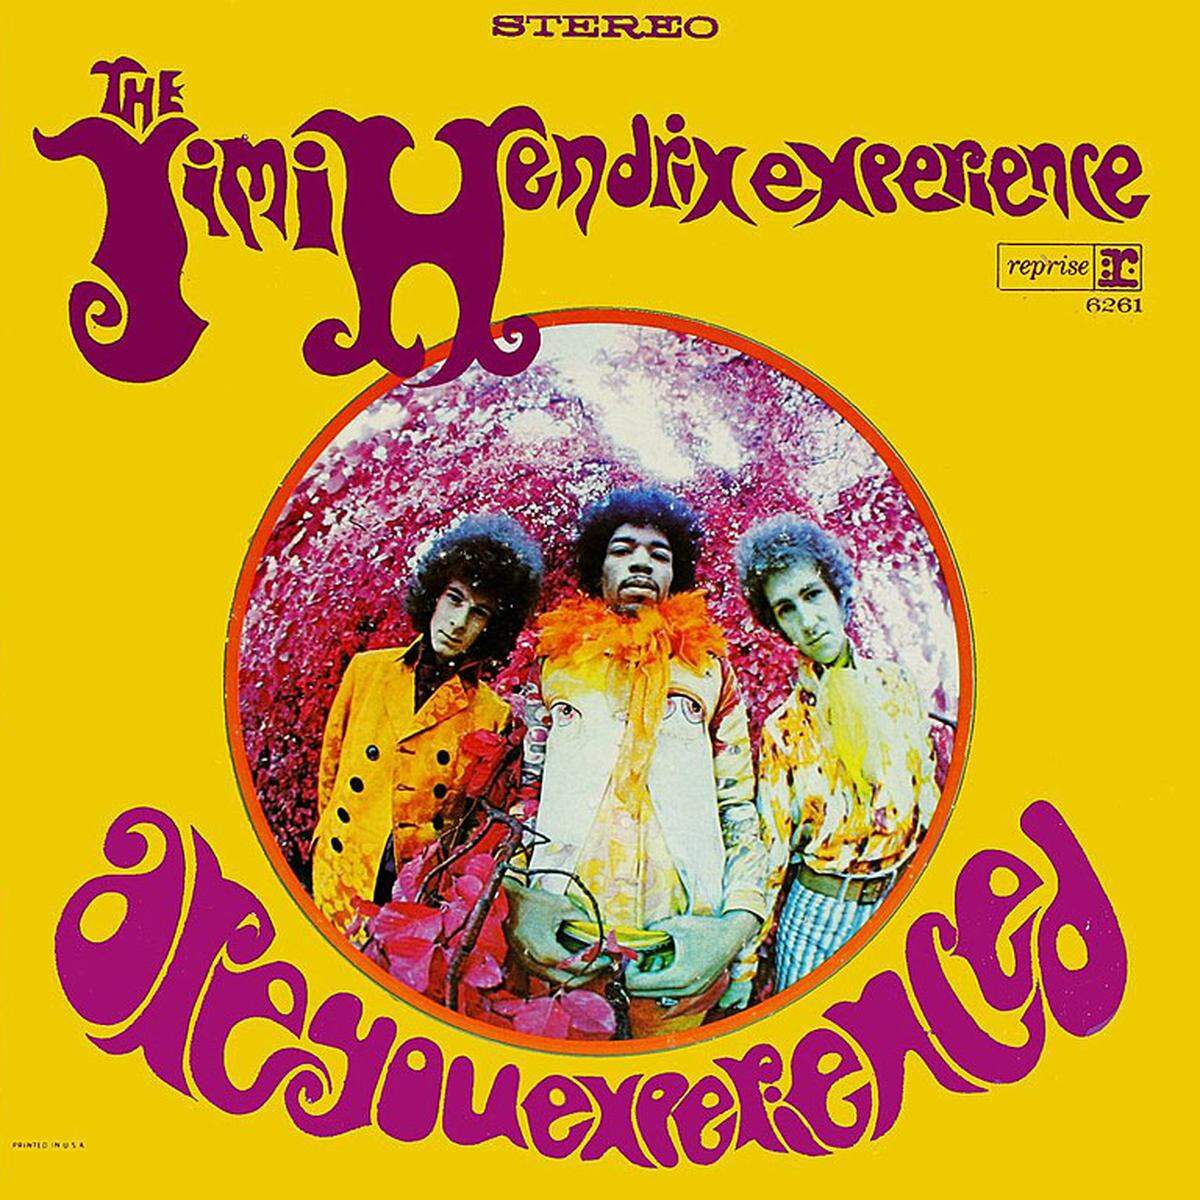 Die erste Platte von Jimi Hendrix "Are You Experienced" (1967) wurde zur Blaupause für eine ganze Generation von psychedelischen Rockmusikern.